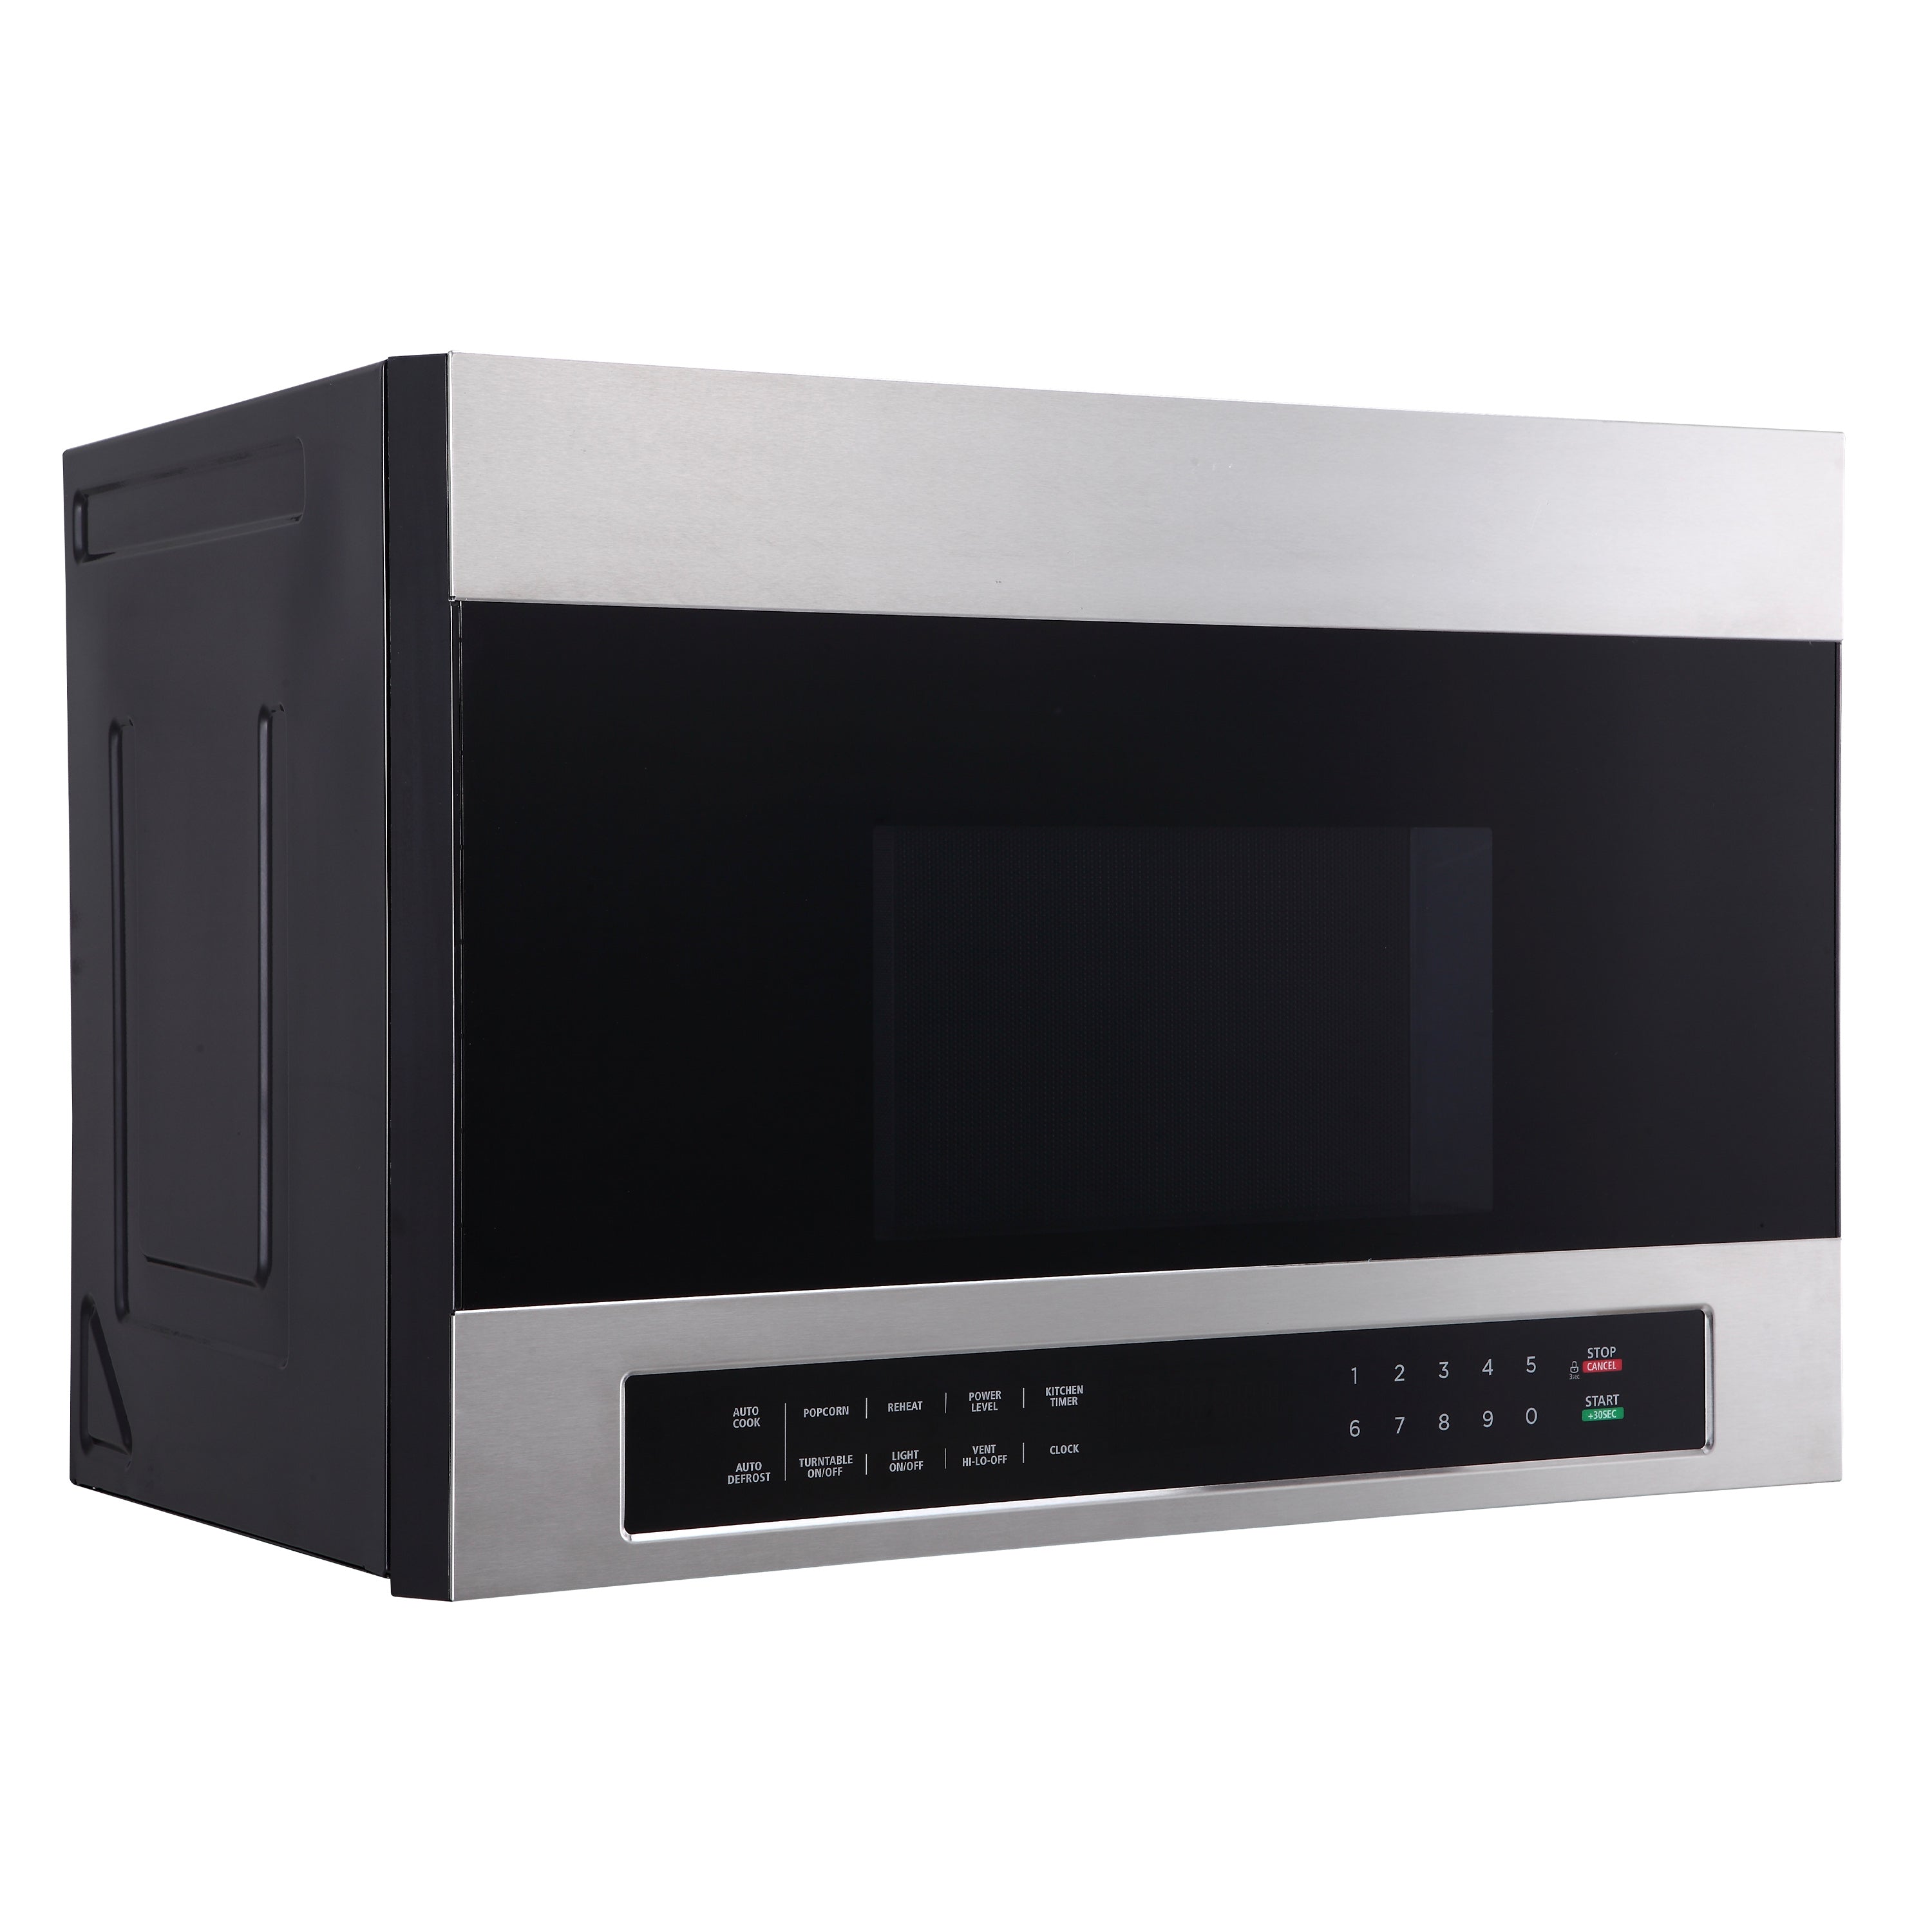 Avanti - MOTR13D3S, Avanti 1.3 cu. ft. Over the Range Microwave Oven, in Stainless Steel